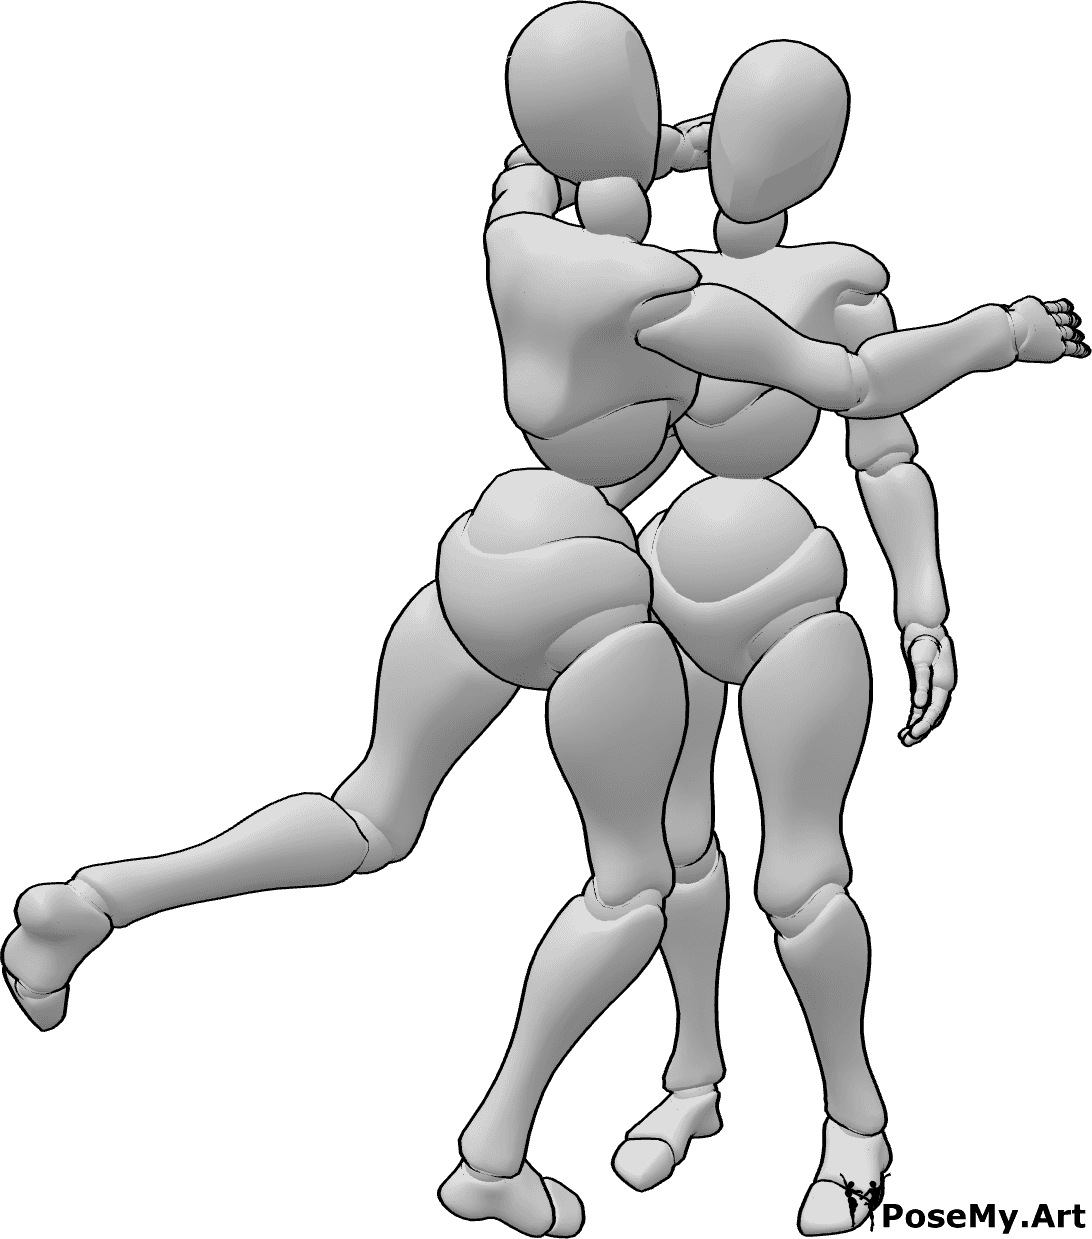 Riferimento alle pose- Posa inaspettata per l'abbraccio - La donna abbraccia la donna in modo eccitato e inaspettato